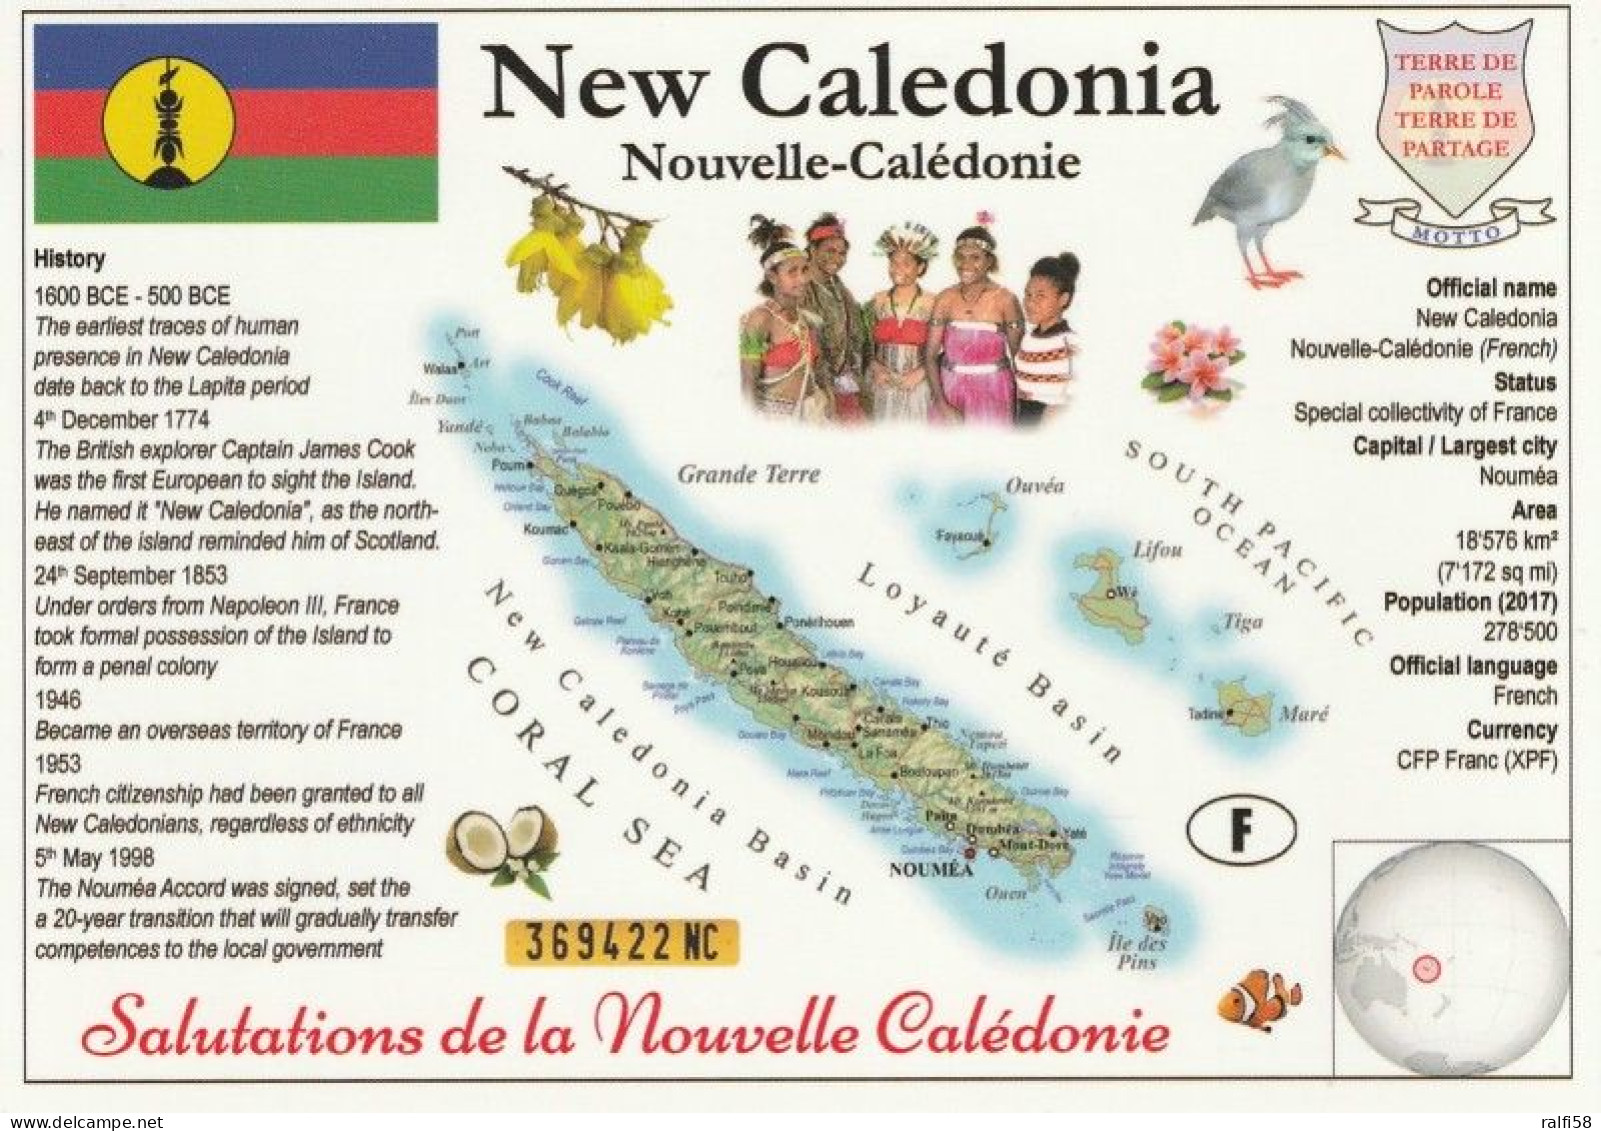 1 Map Of New Caledonia * 1 Ansichtskarte Mit Der Landkarte Von Neukaledonien Mit Informationen Und Der Flagge Des Landes - Carte Geografiche